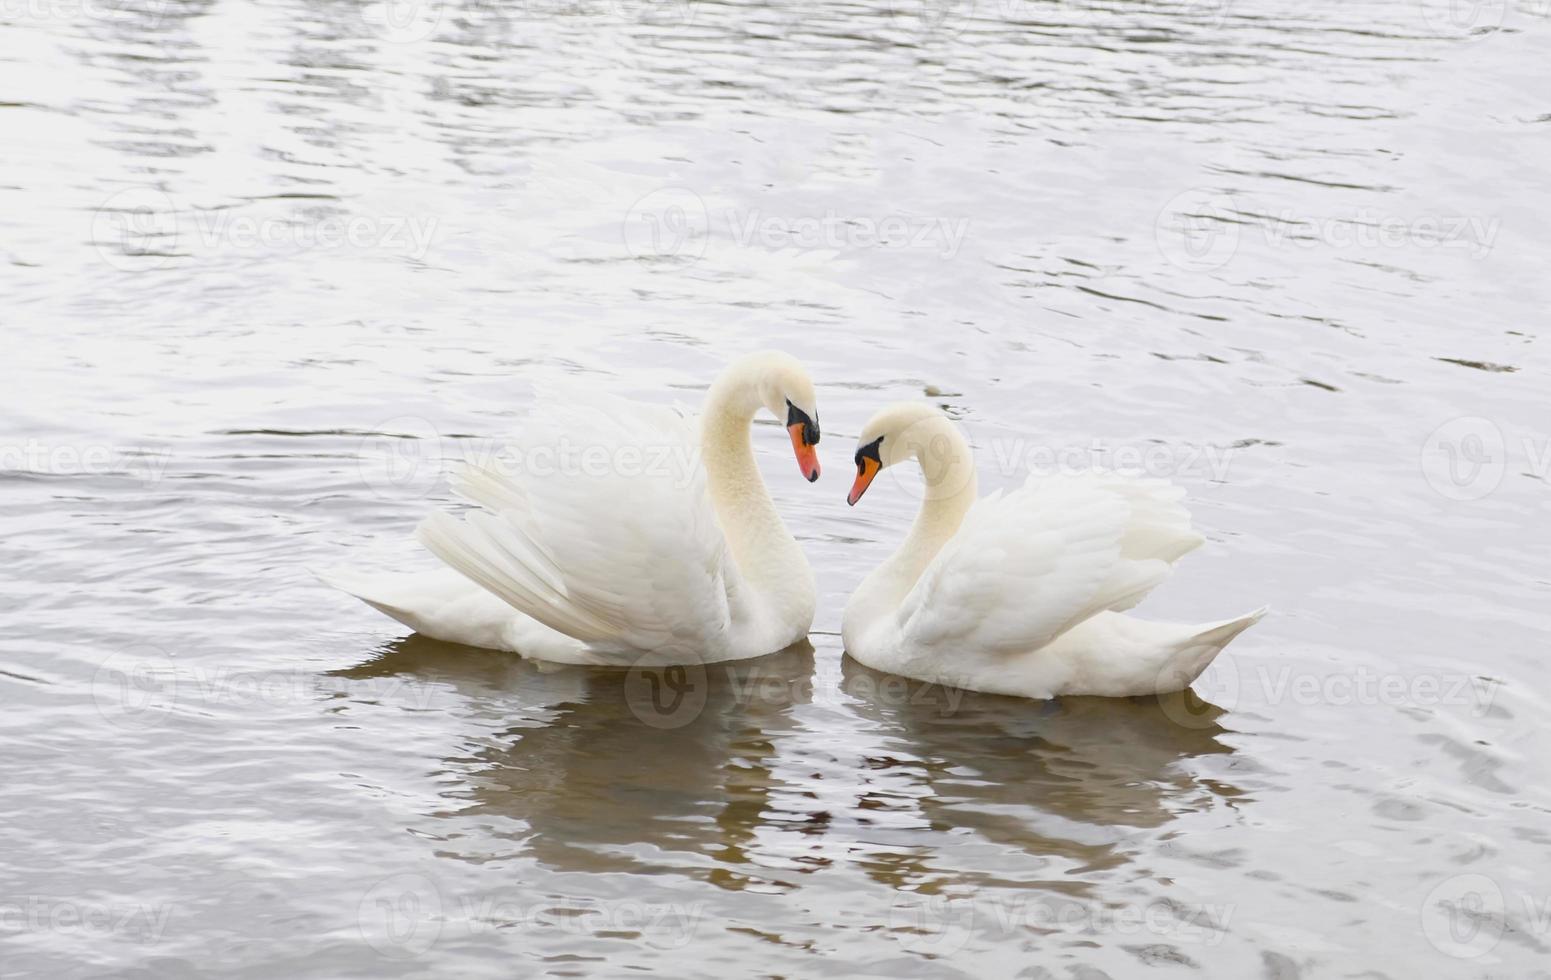 un par de cisnes blancos nadan en el agua. un símbolo de amor y fidelidad son dos cisnes que forman un corazón. paisaje mágico con aves silvestres - cygnus olor. imagen tonificada, banner, espacio de copia. foto